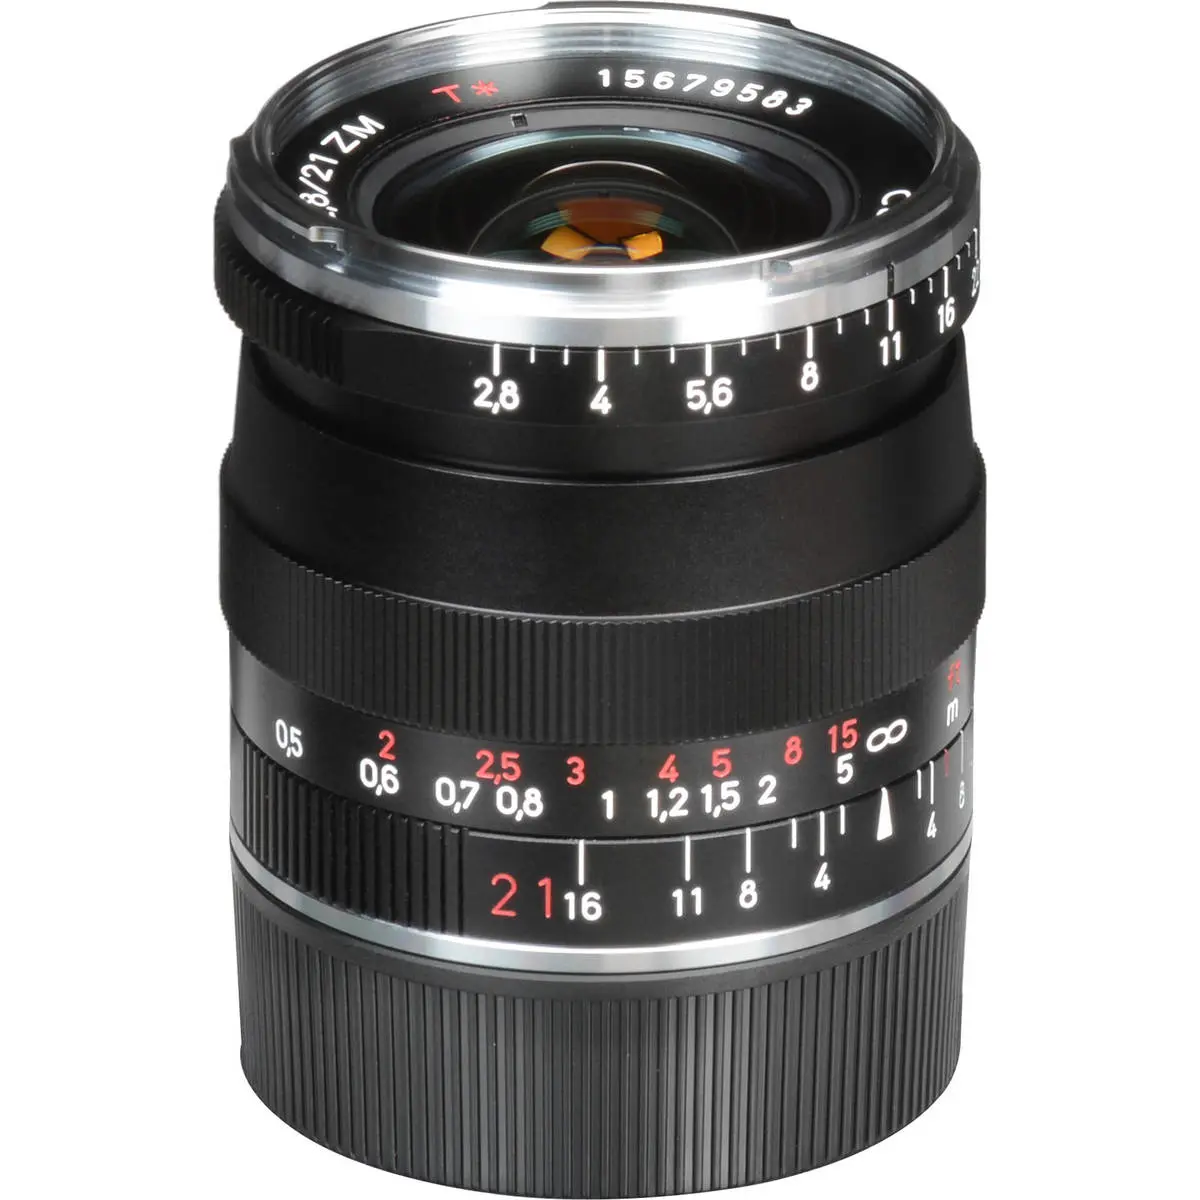 10. Carl Zeiss 21mm F/2.8 BIOGON T* ZM (Leica M) Black Lens